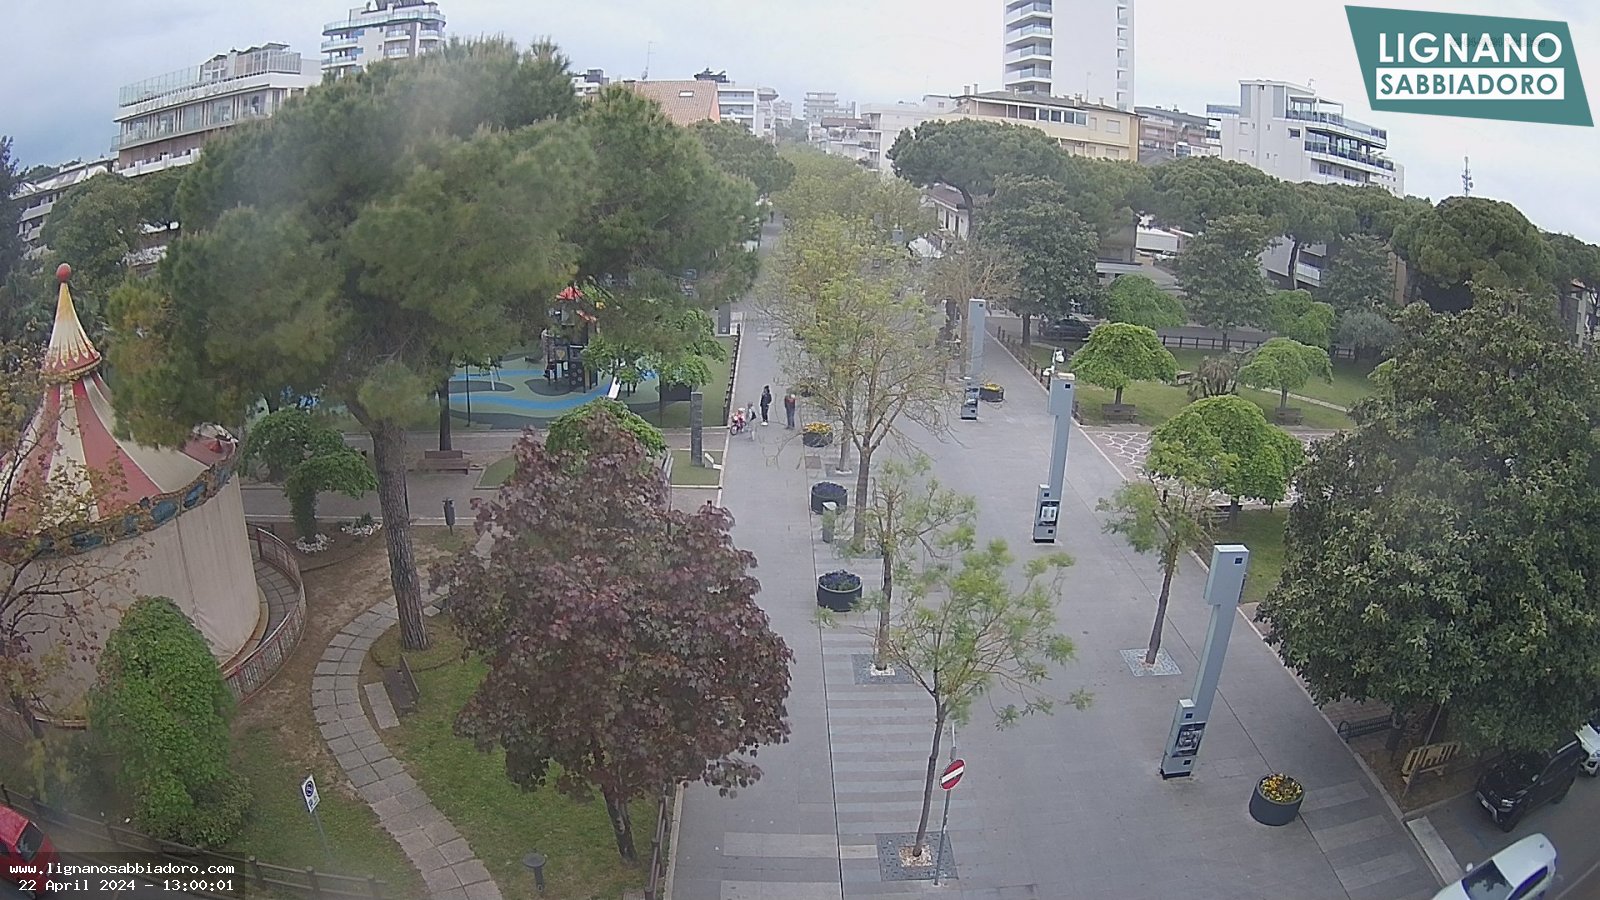 Immagine webcam con vista sul parco e sull'area pedonale